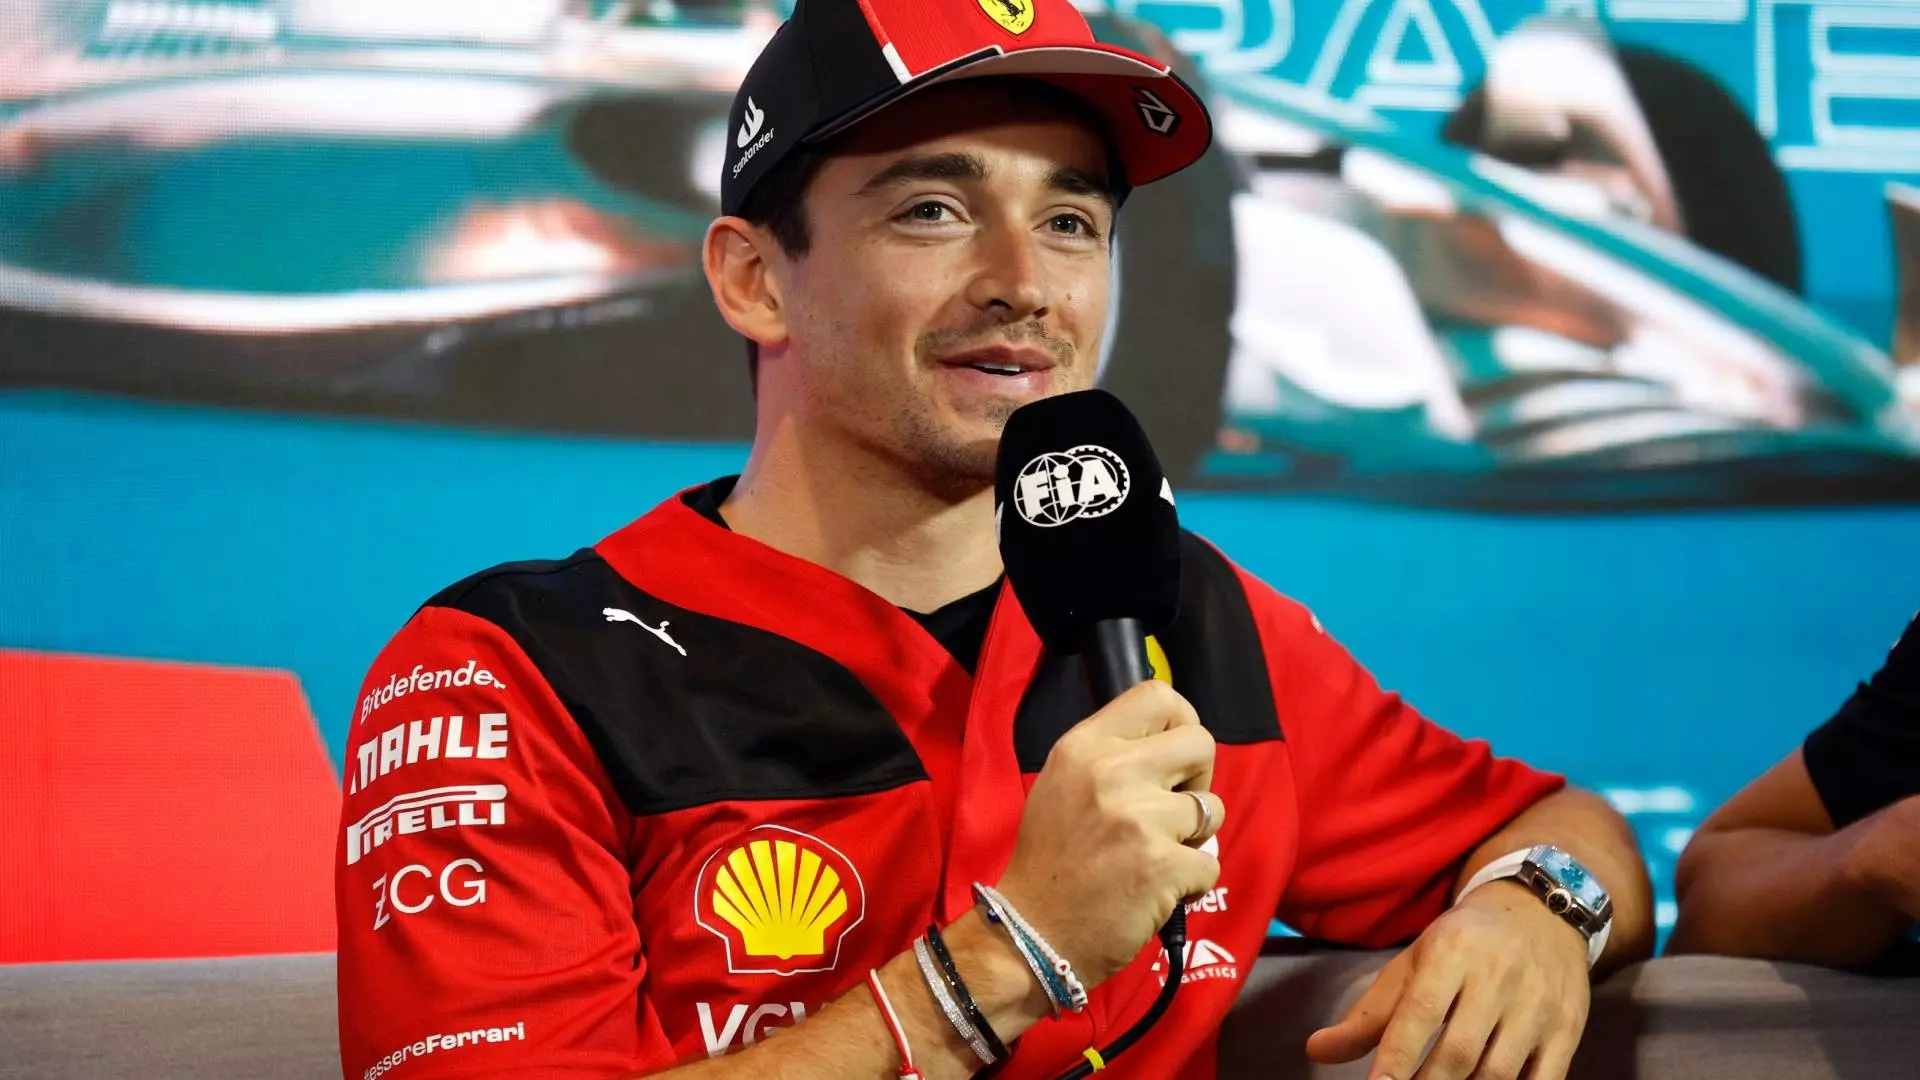 F1, Ferrari: Charles Leclerc fiducioso, ma c’è ancora ‘da lavorare’